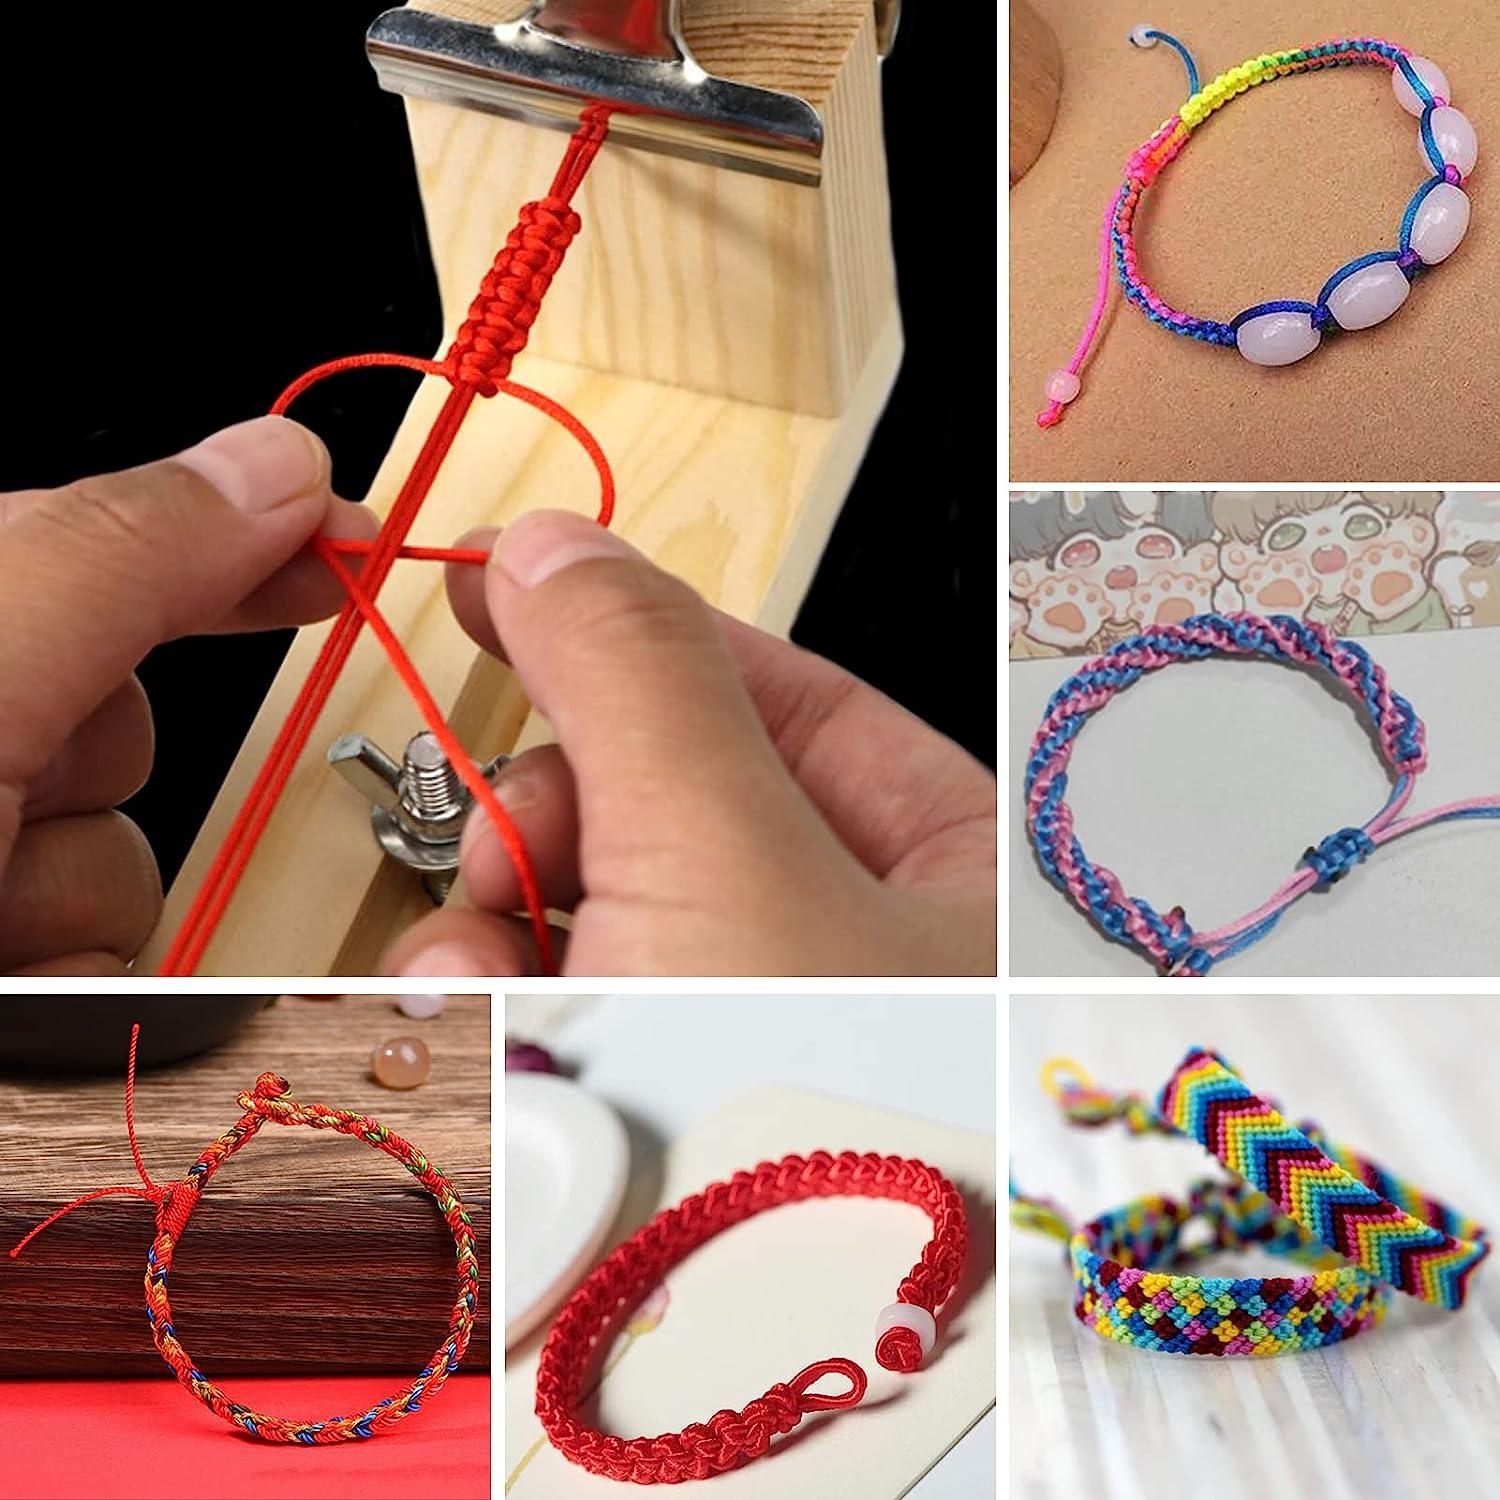 Stainless Steel Paracord Bracelet Maker Jig Kit Knitting Cord Knit